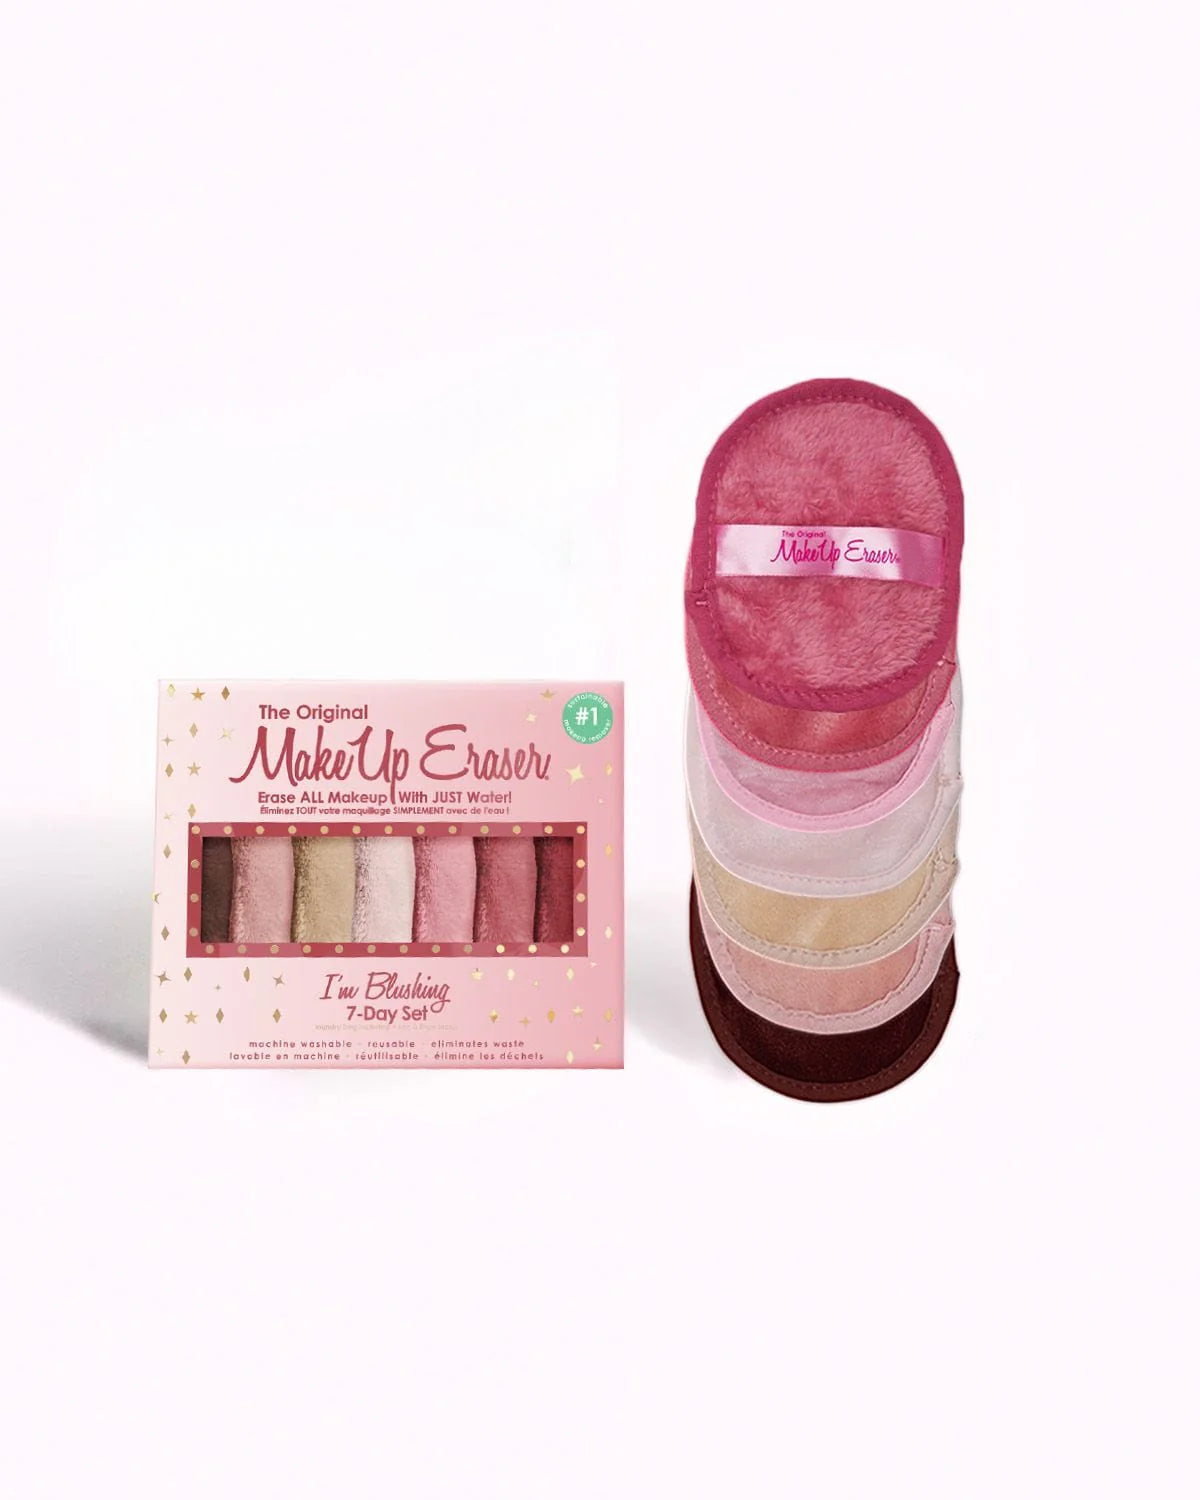 MakeUp Eraser I'm Blushing 7-Day Set